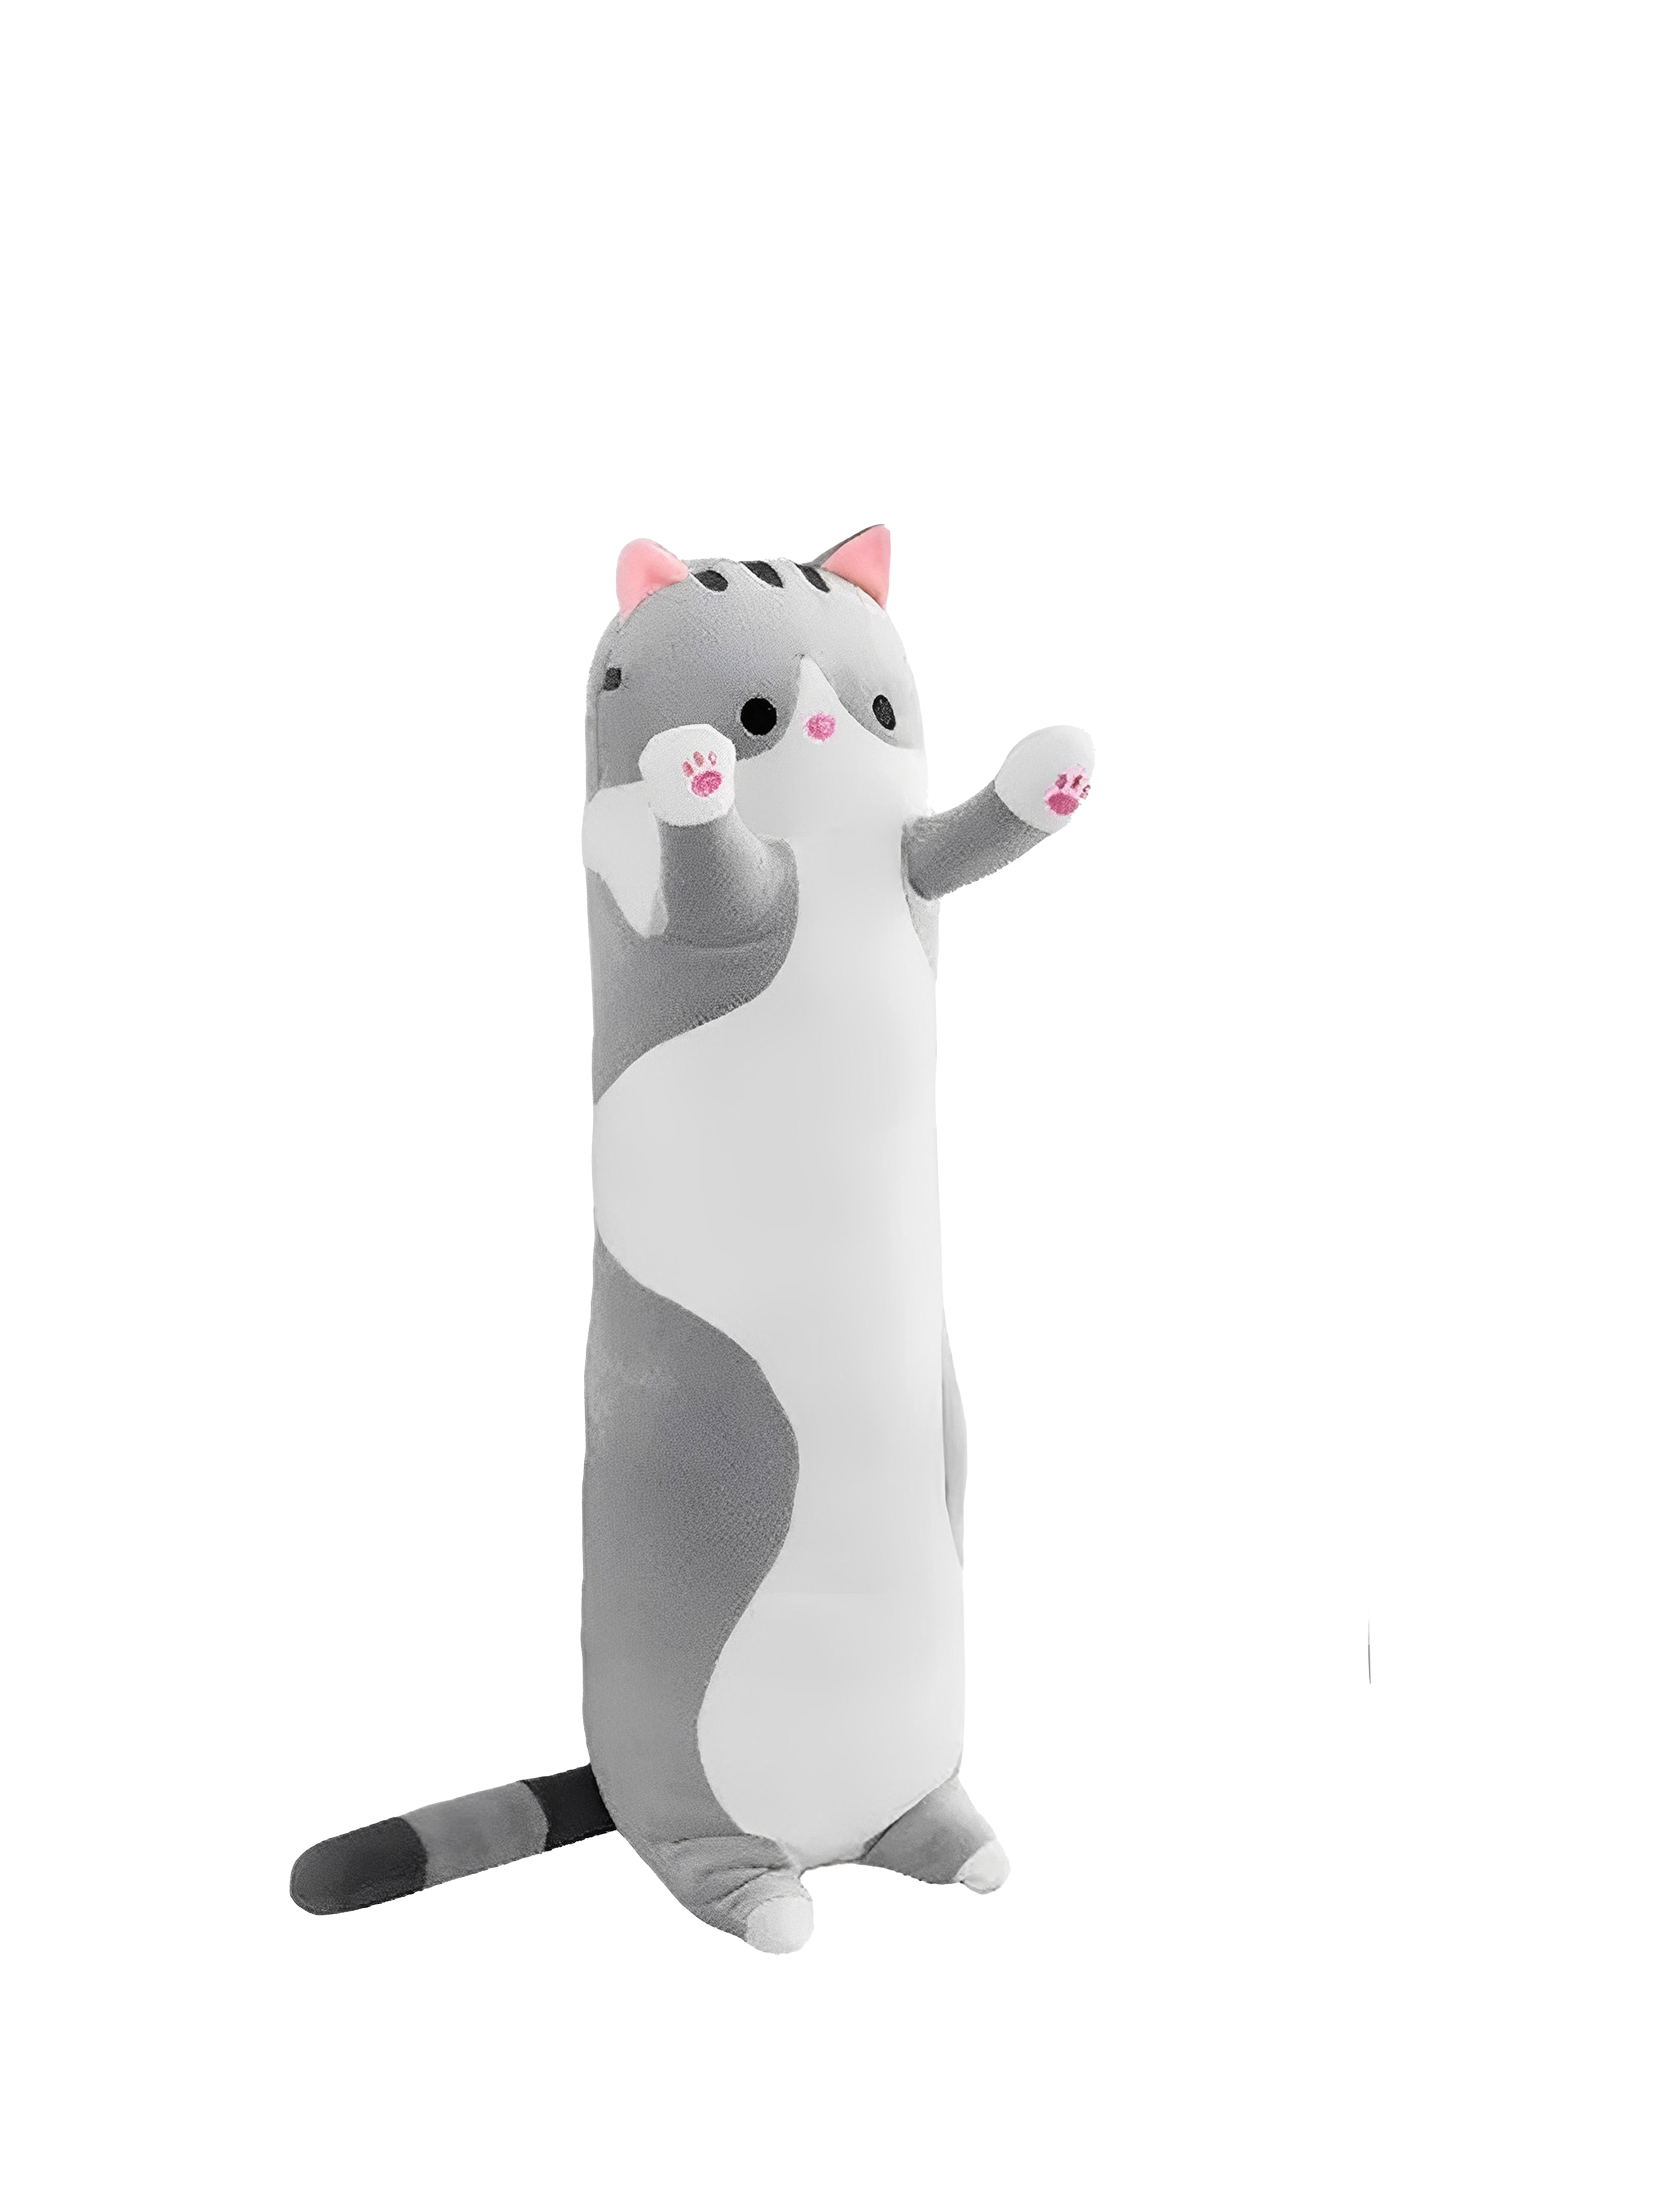 Мягкая игрушка Market toys lab антистресс кот-батон-багет, 110 см, серый кот батон худой 70 см мягкая игрушка подушка длинный серый обнимашка антистресс кот ба